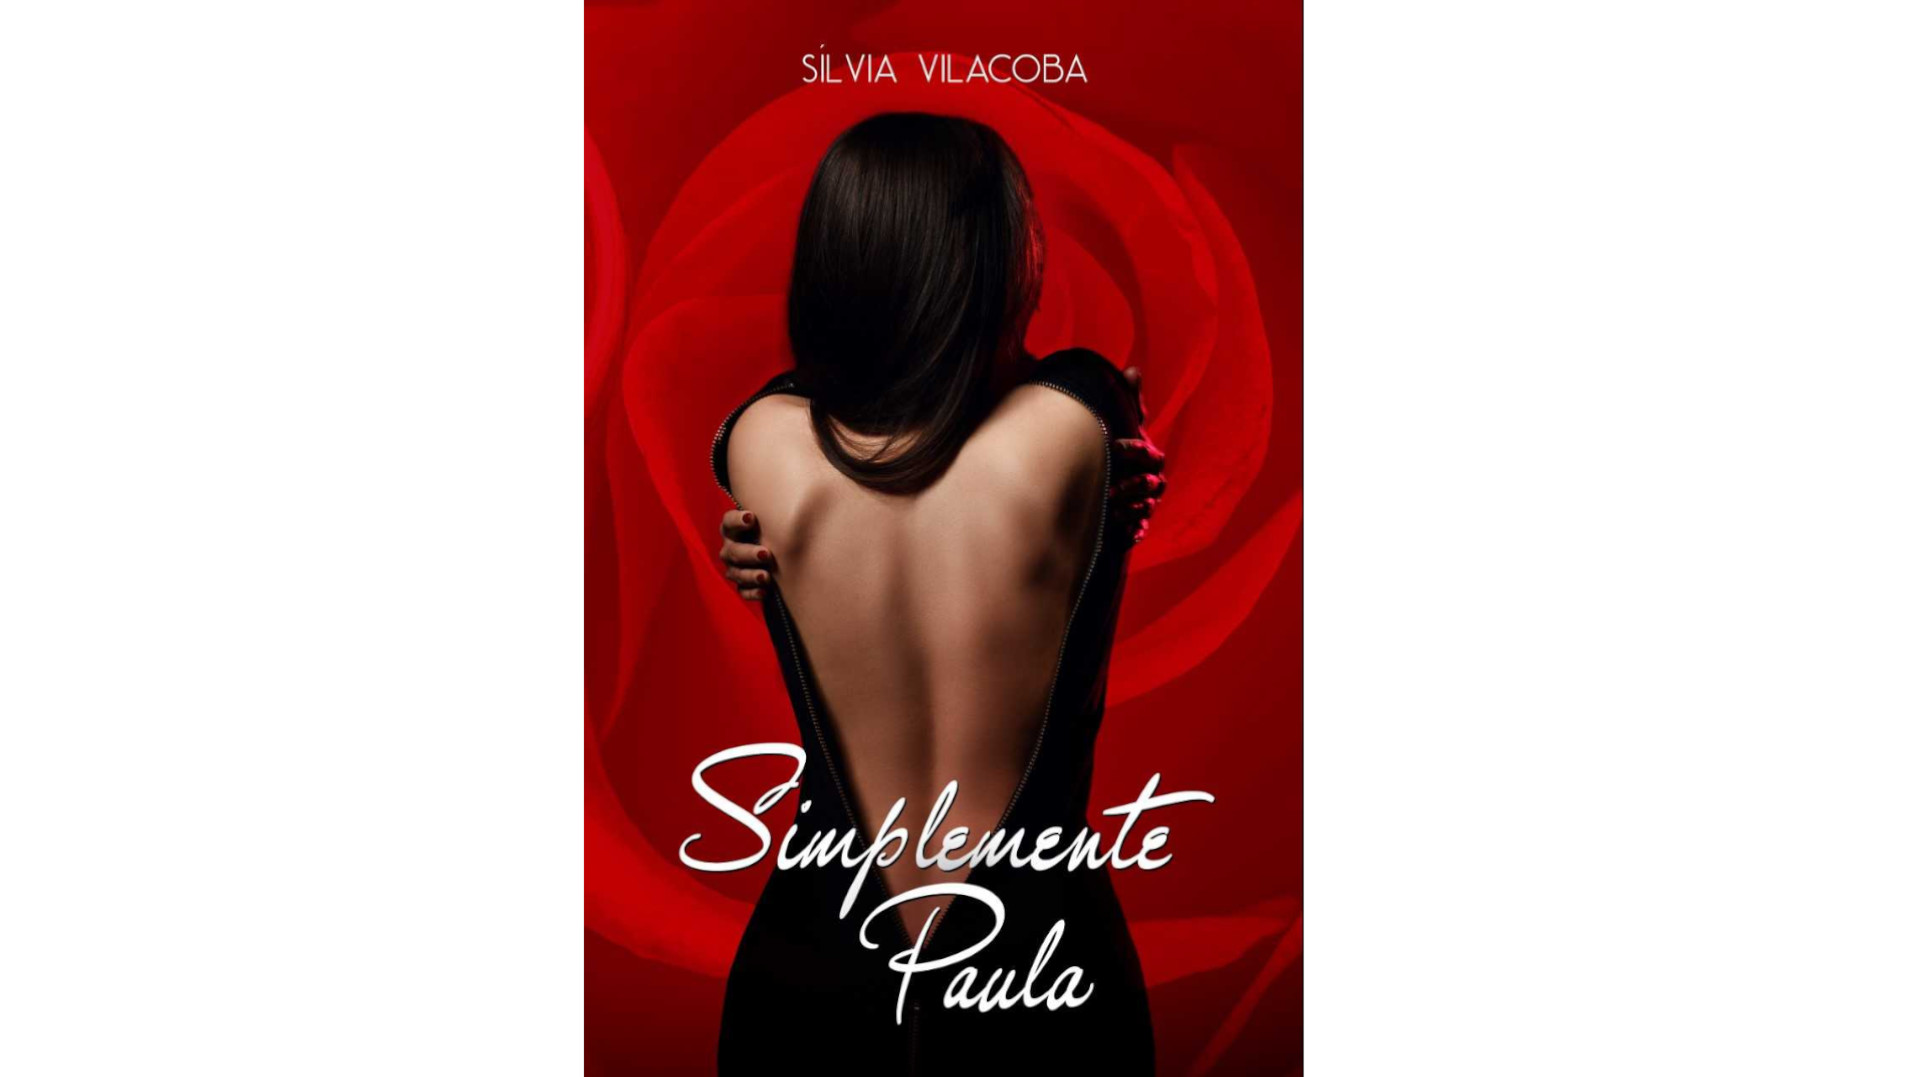 Presentació de la novel·la “Simplemente Paula” de Sílvia Vilacoba